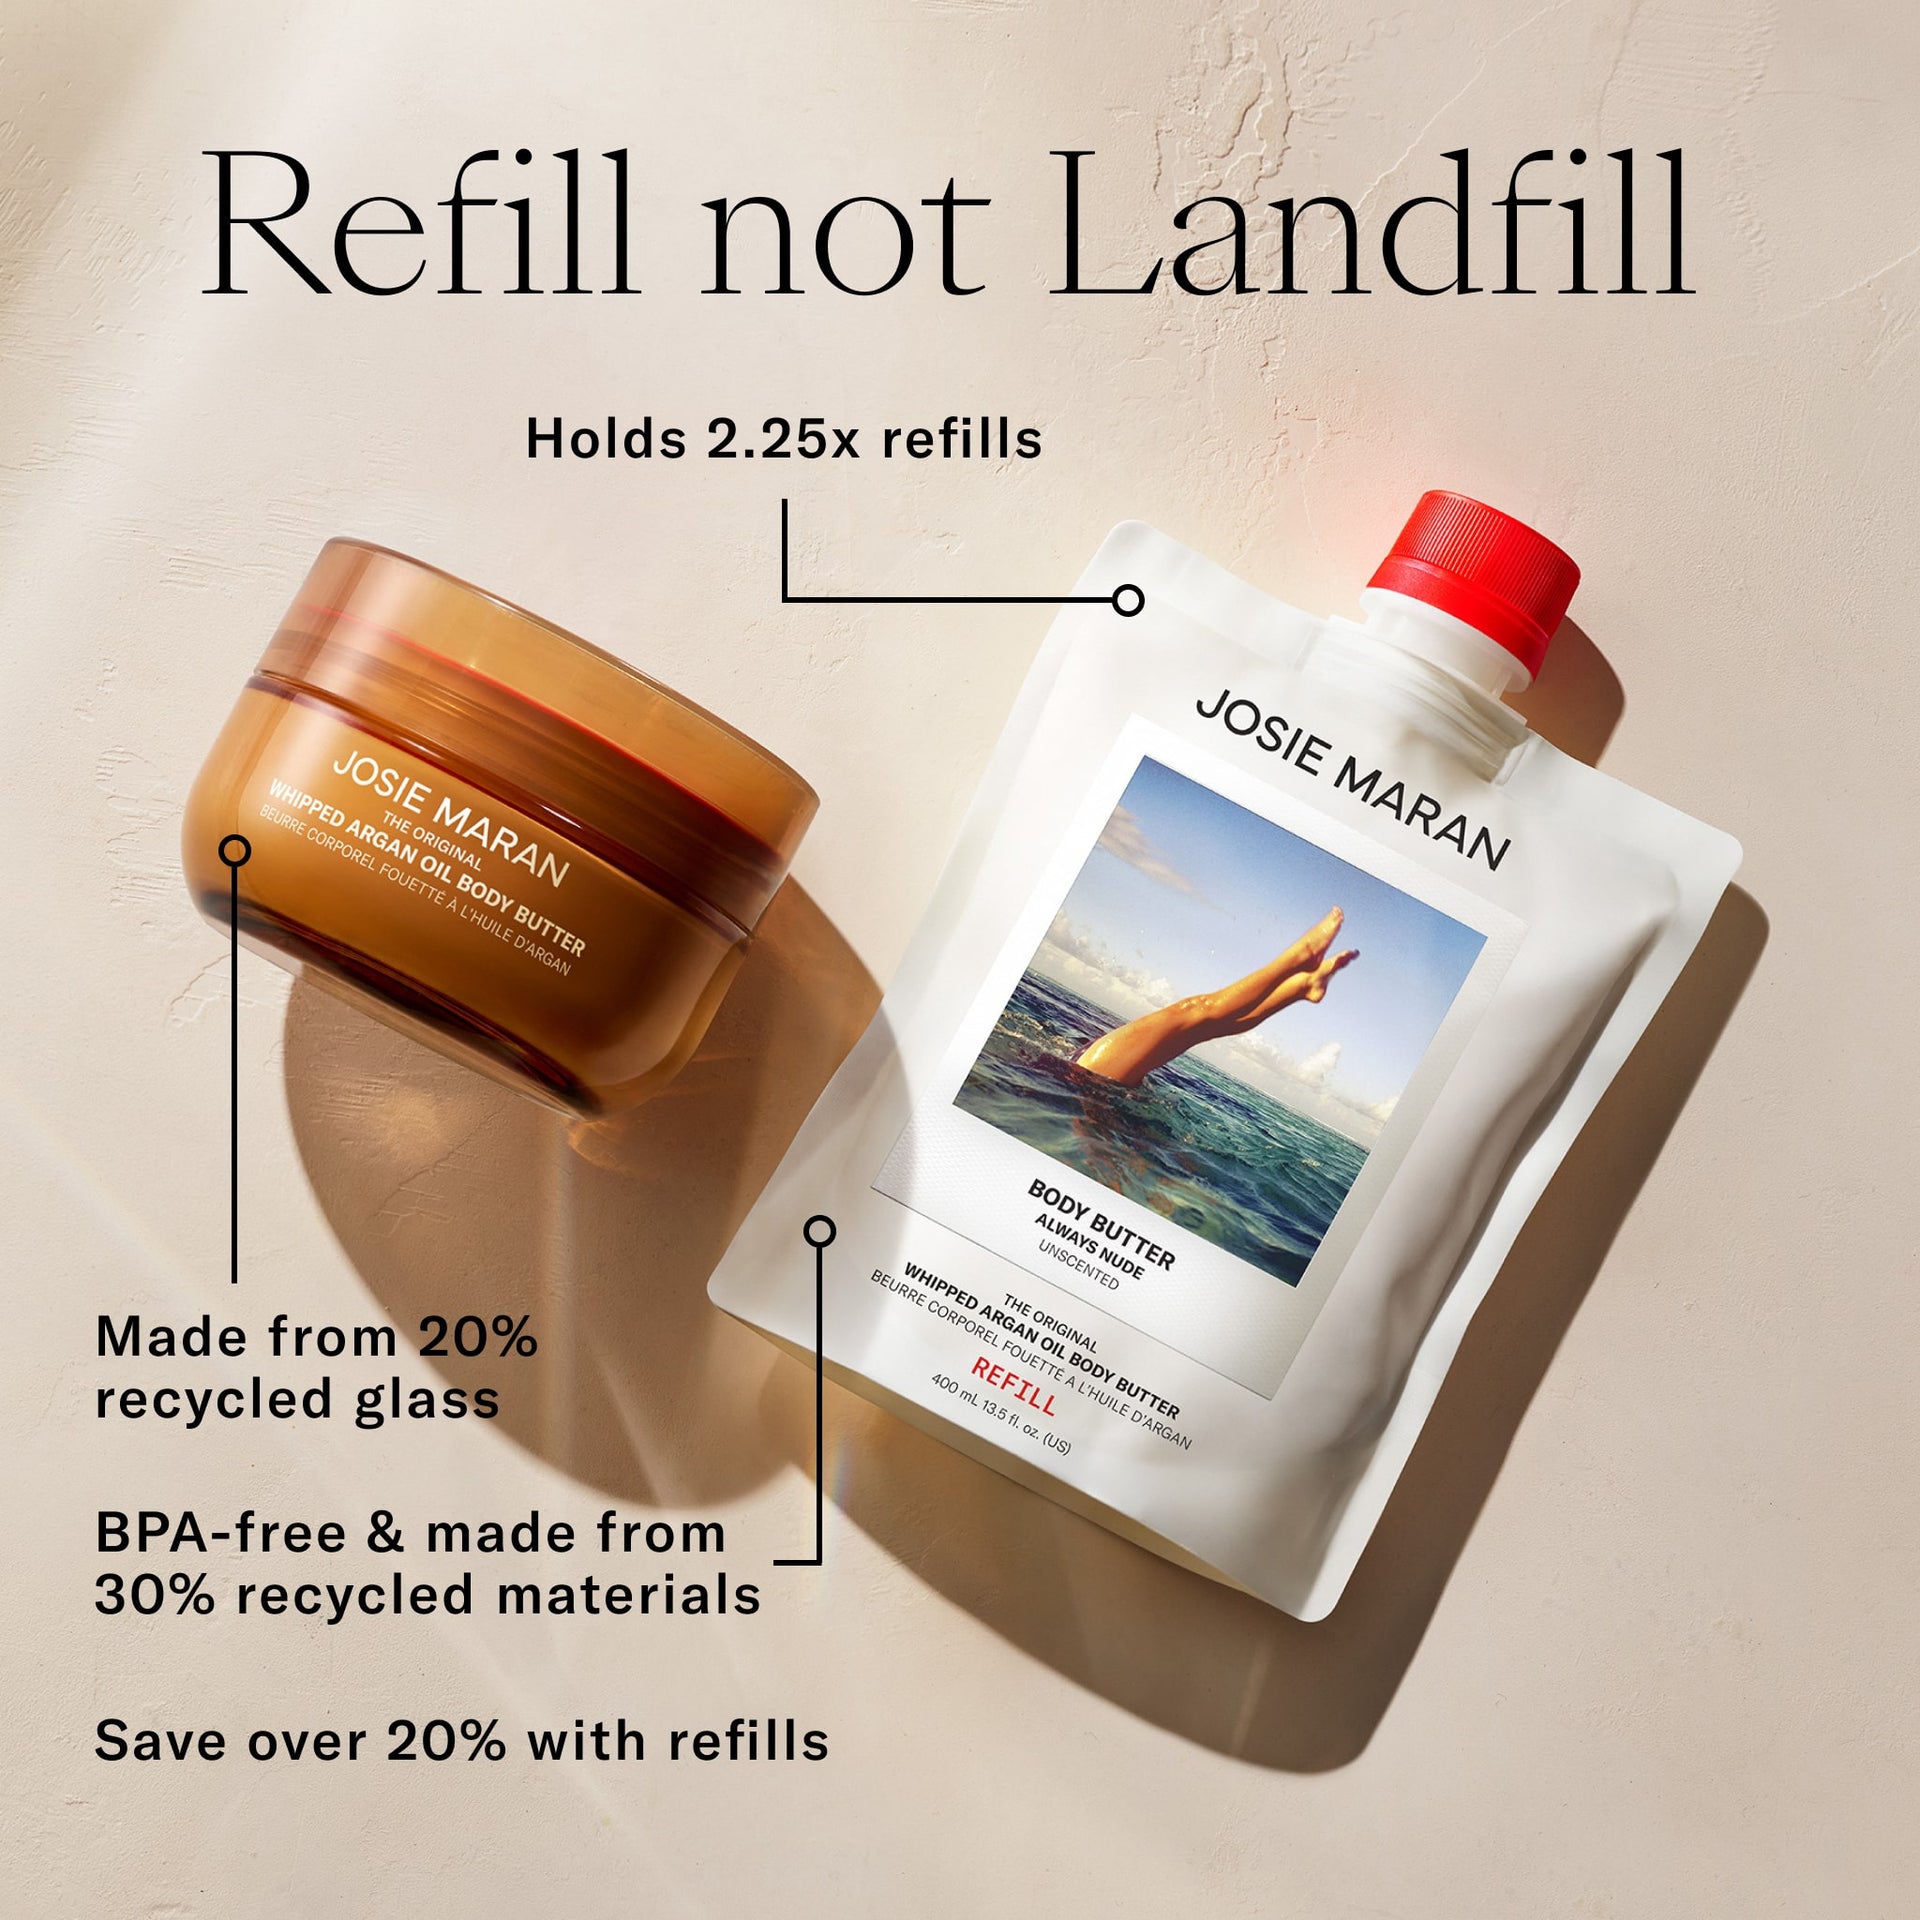 Refill Not Landfill